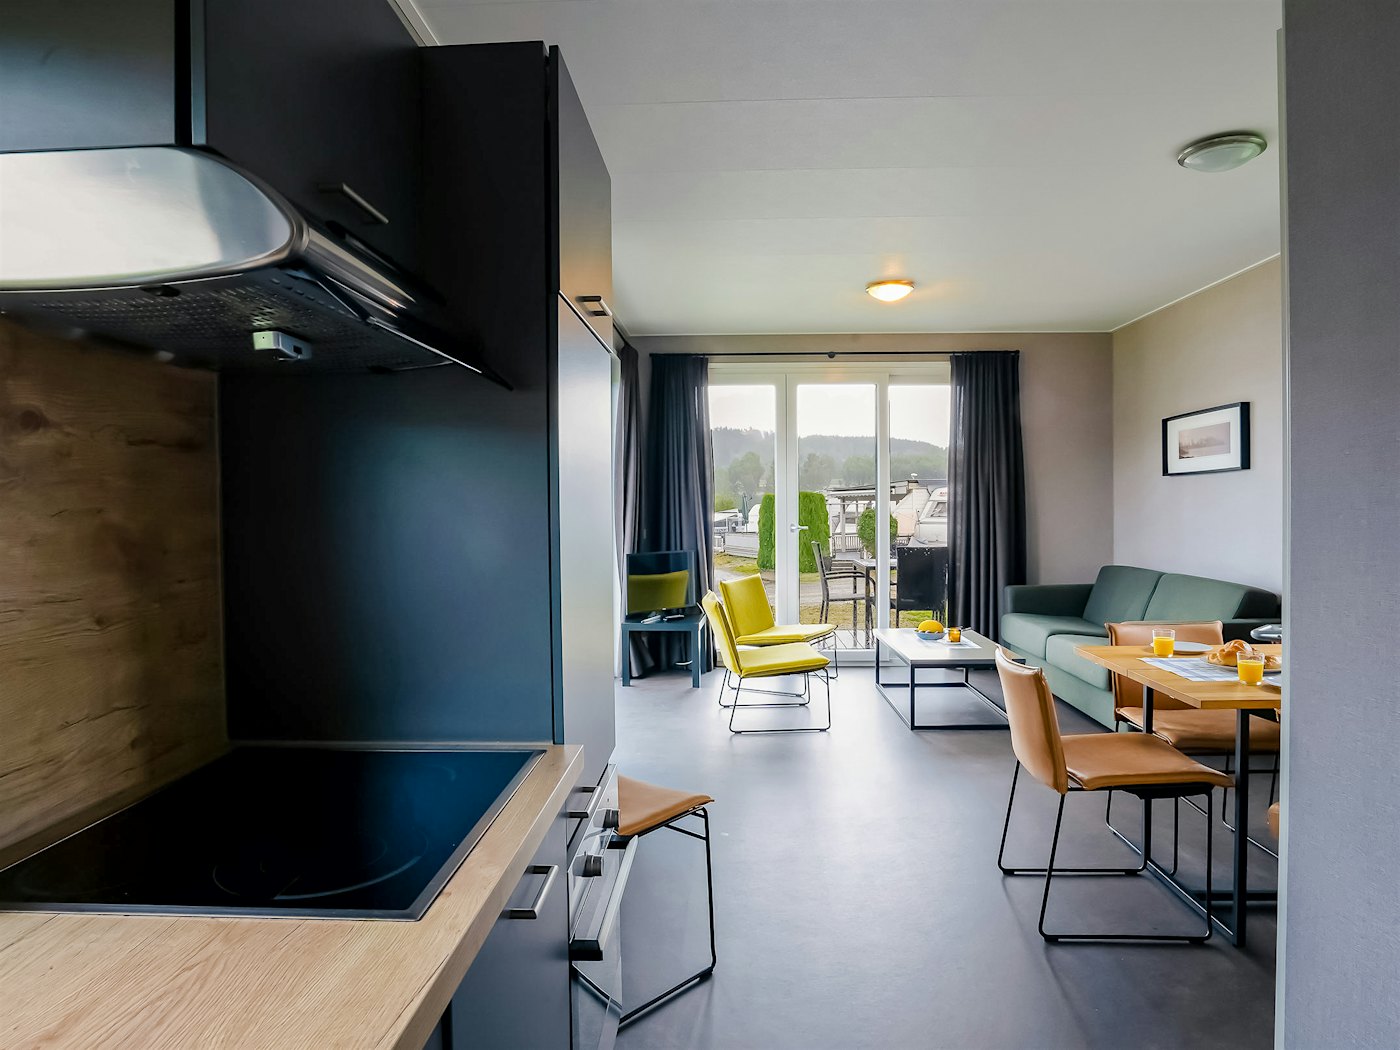 Moderne rom med kjøkken, sofa og spisebord. Vinduer fra gulv til tak. Foto